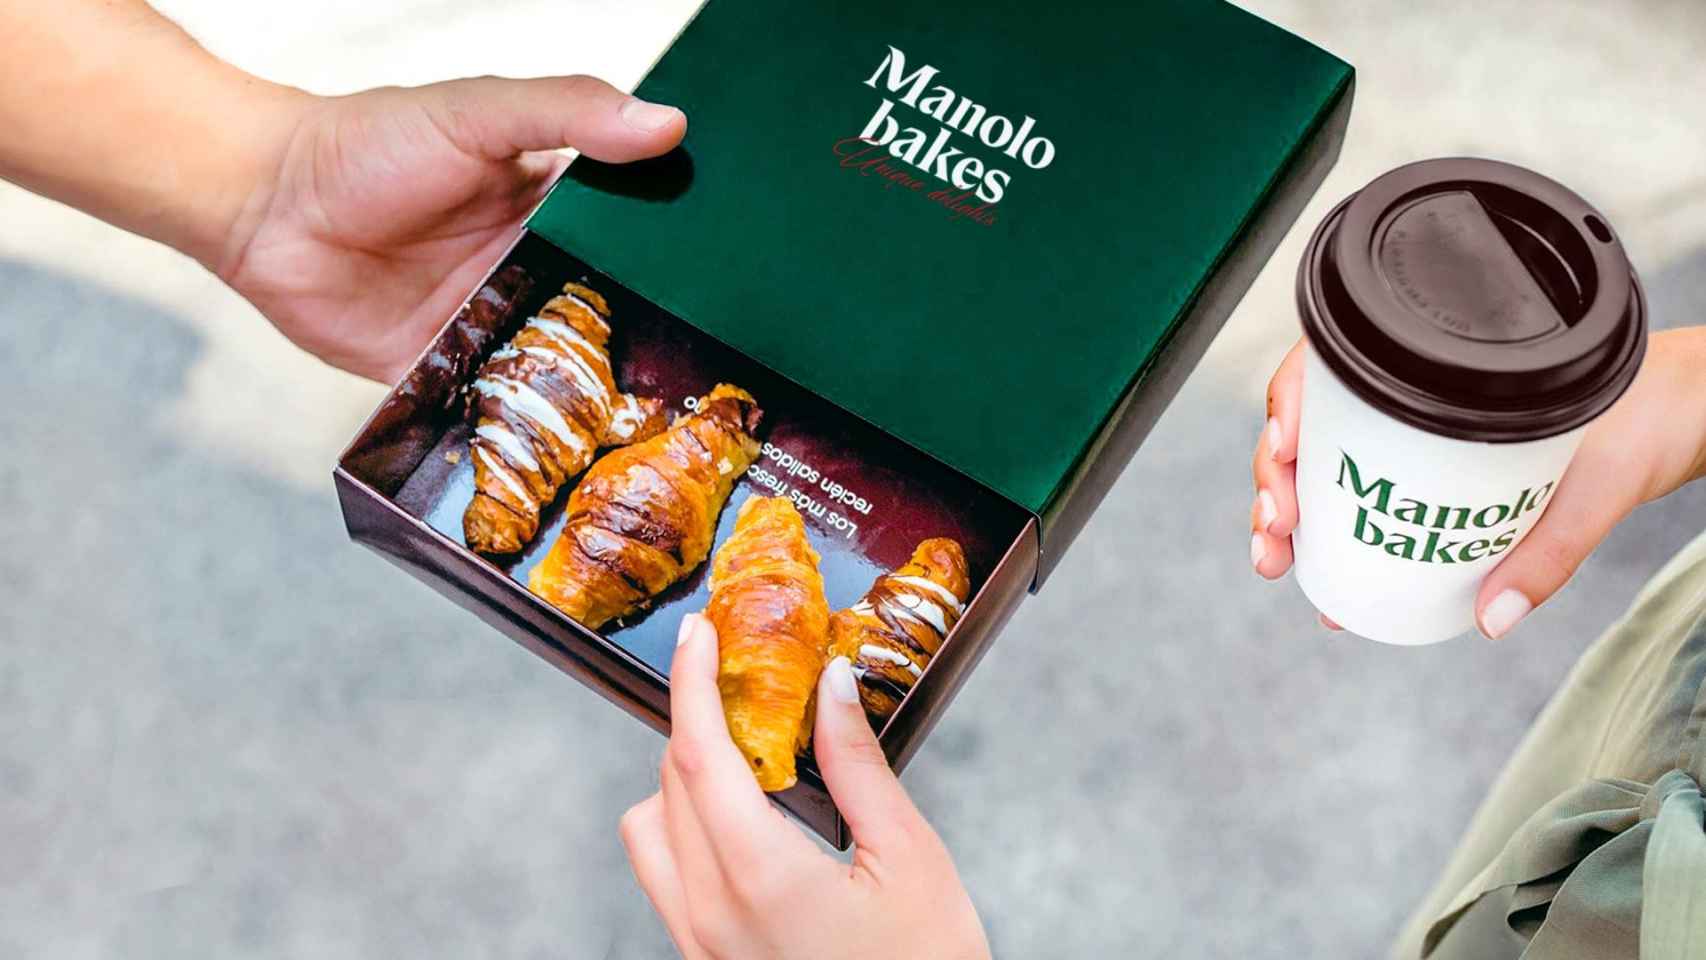 Caja de 'Manolitos' de Manolo Bakes, la panadería que llega a Barcelona / MANOLO BAKES